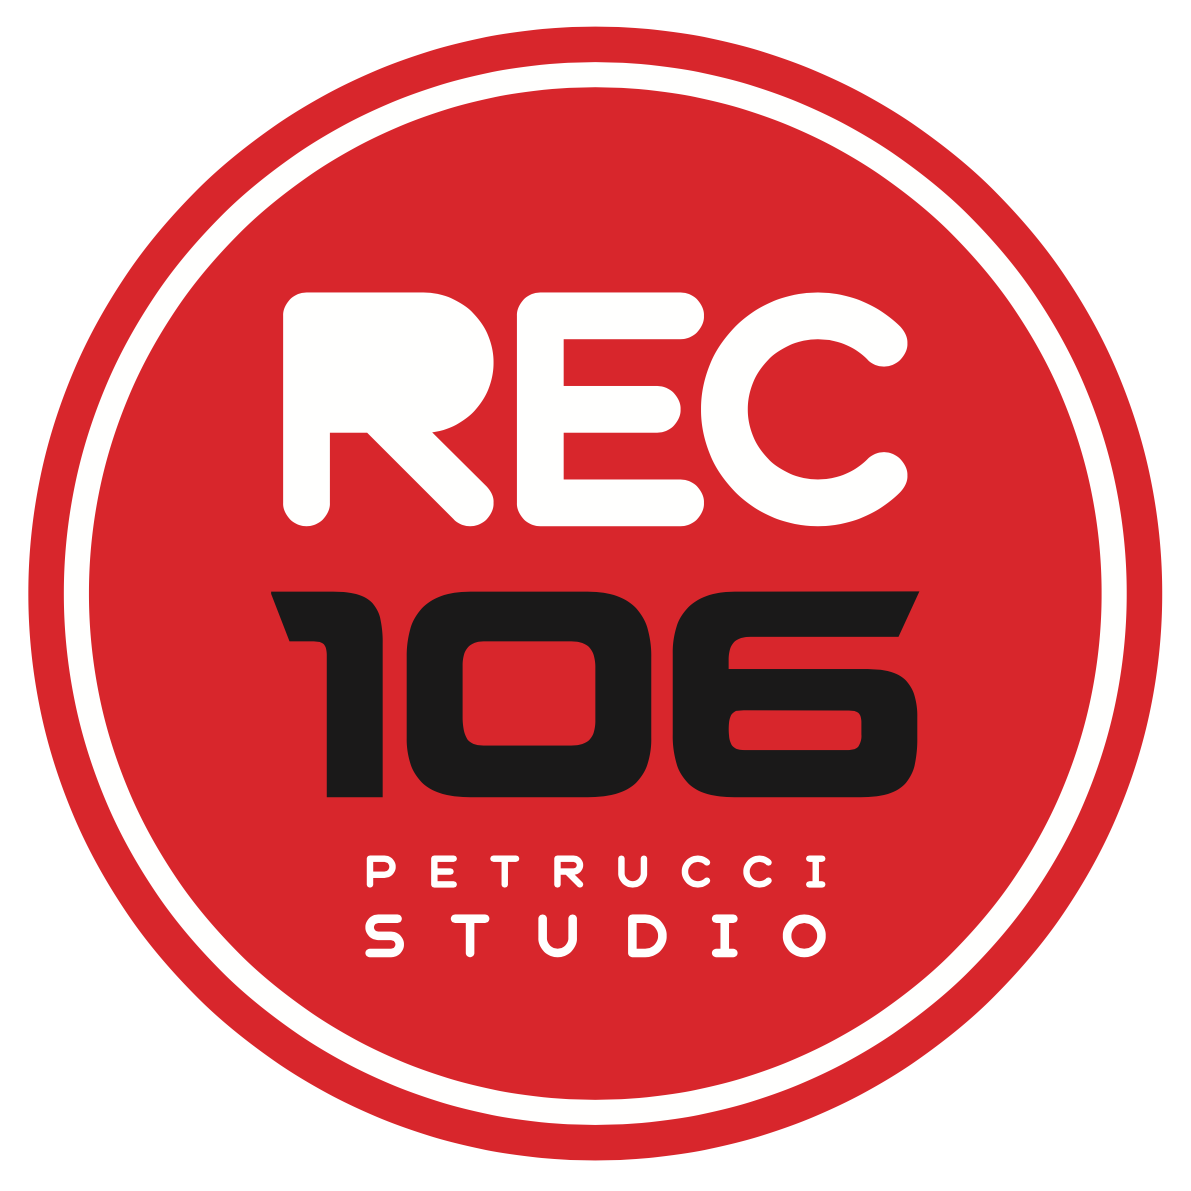 REC 106 Studios